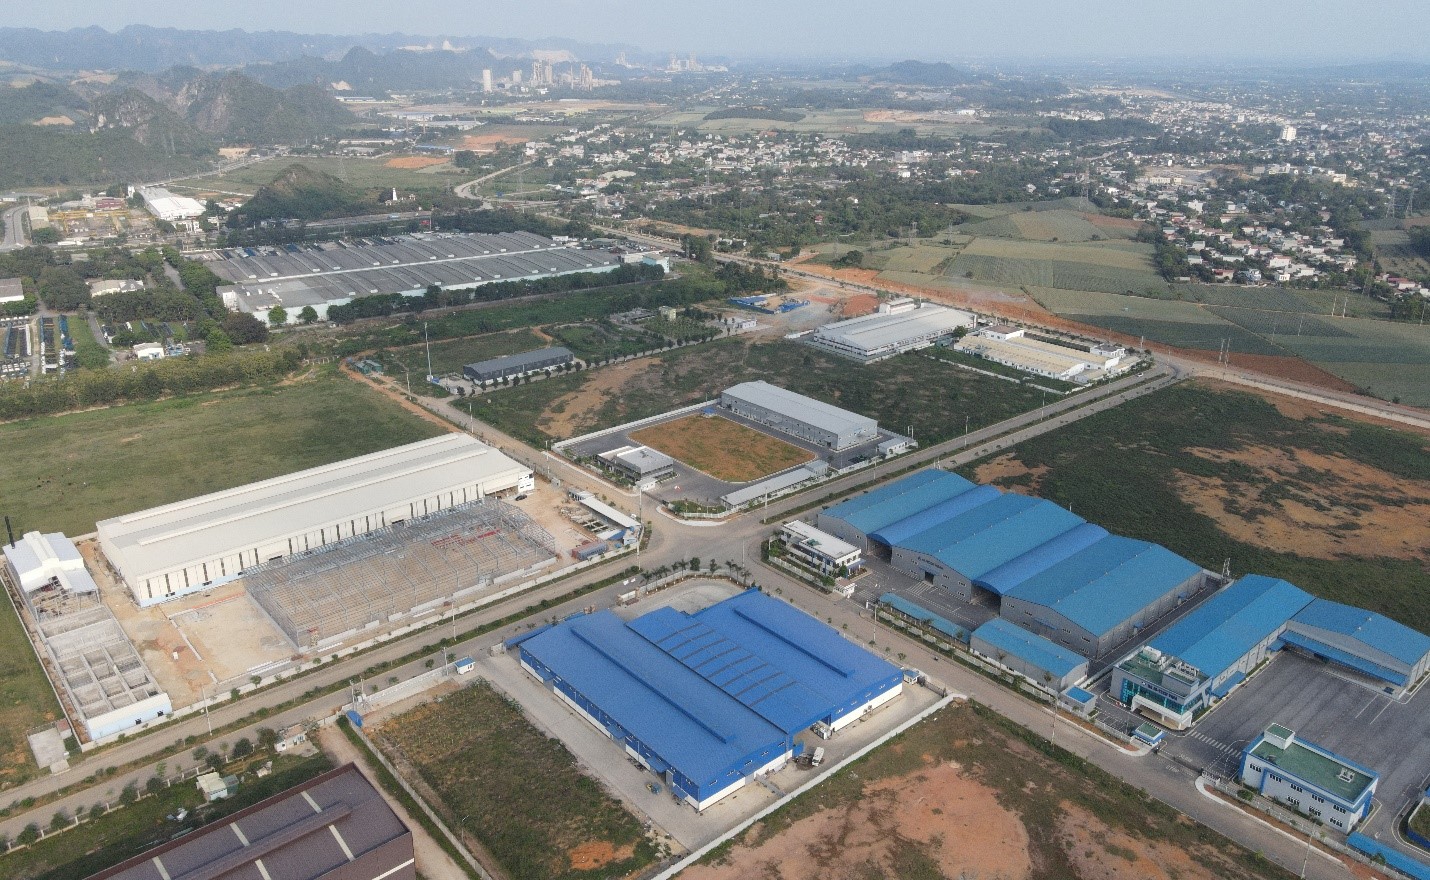 Khu công nghiệp Bỉm Sơn thu hút hàng loạt các doanh nghiệp Hàn Quốc, Nhật Bản, Đài Loan đến đầu tư, xây dựng nhà máy